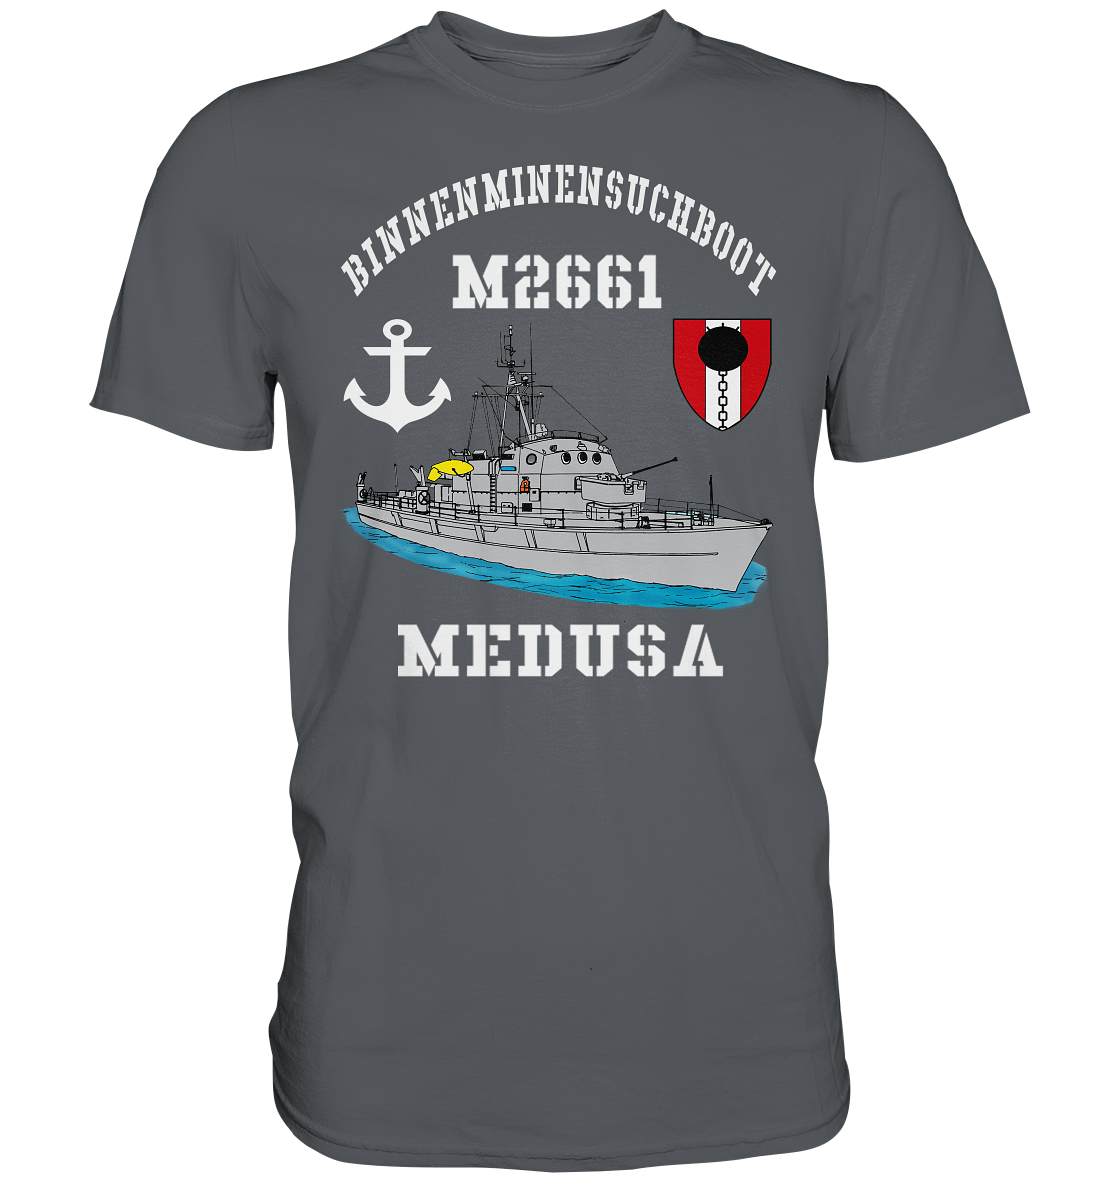 BiMi M2661 MEDUSA 7.MSG Anker  - Premium Shirt